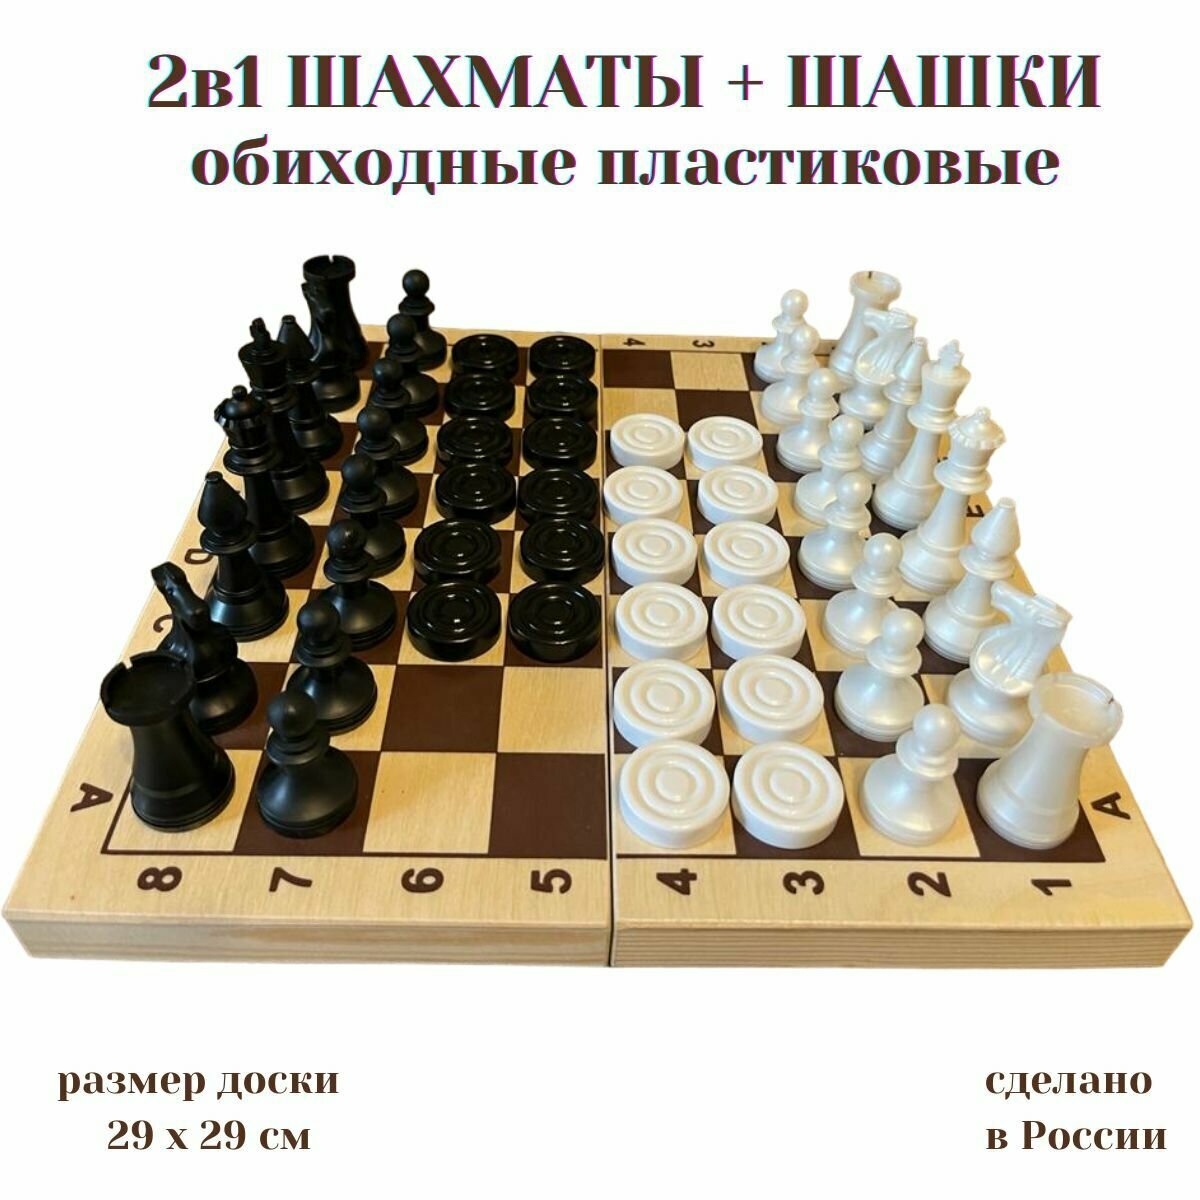 2в1 Шахматы+шашки обиходные пластиковые с деревянной доской 29 см